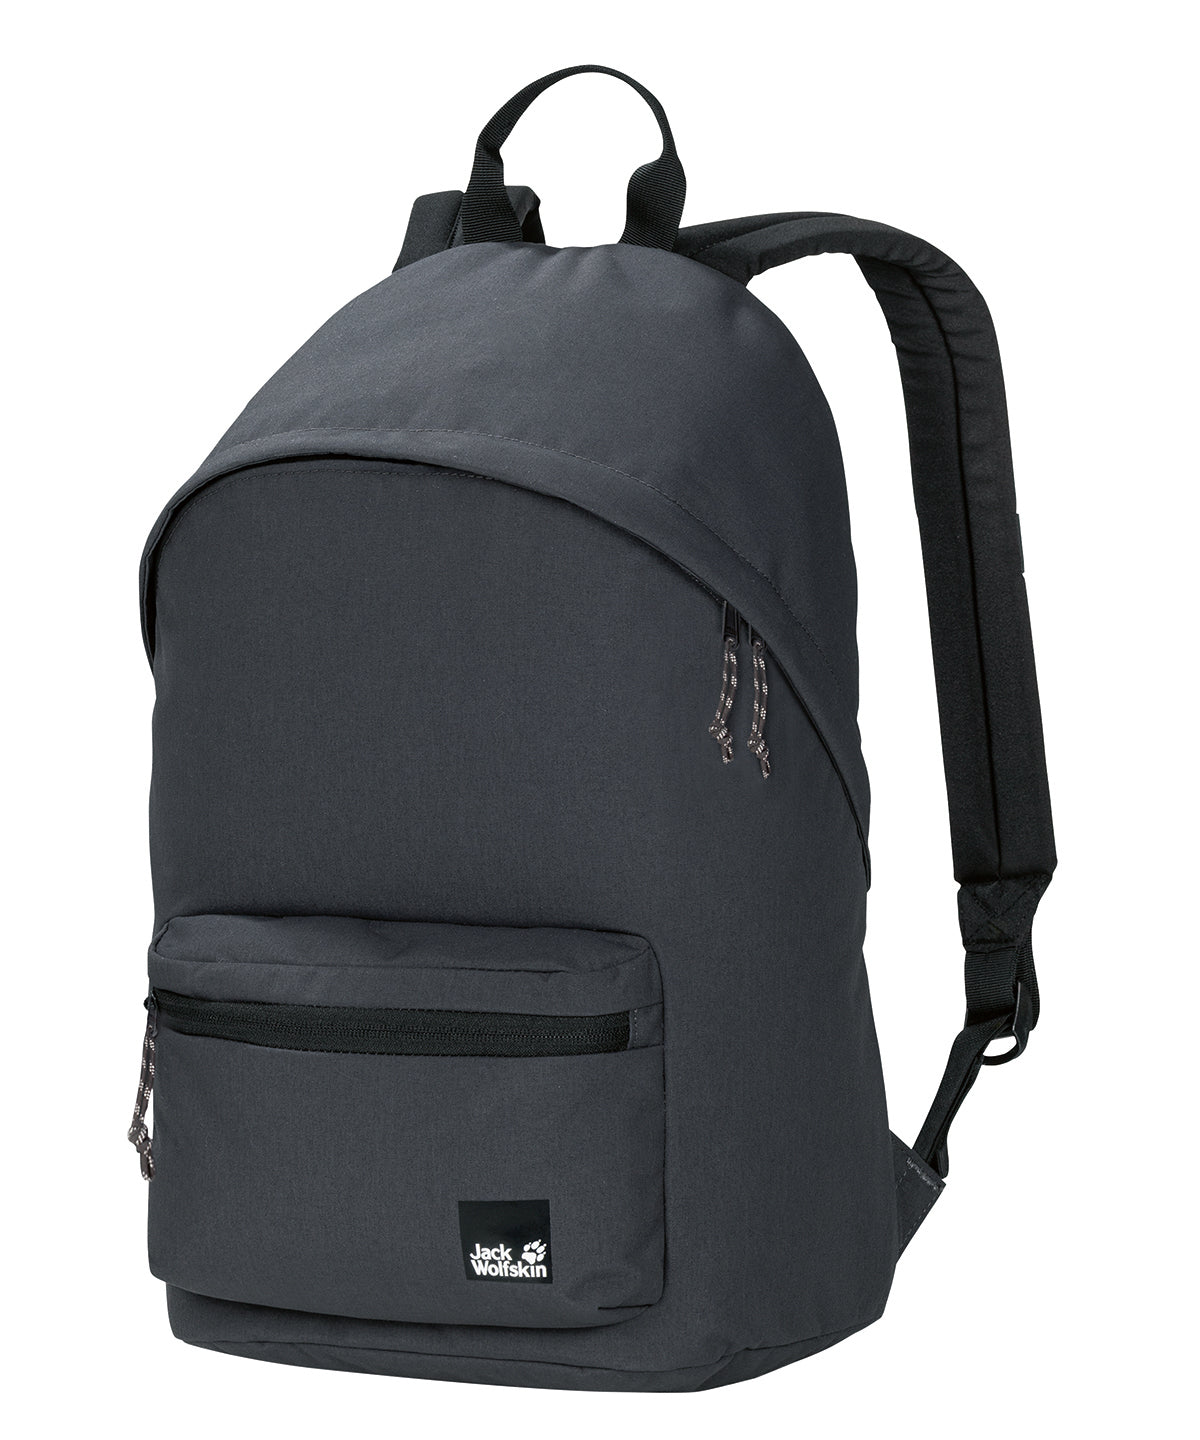 Personalised Bags - Dark Grey Jack Wolfskin 365 Backpack (NL)